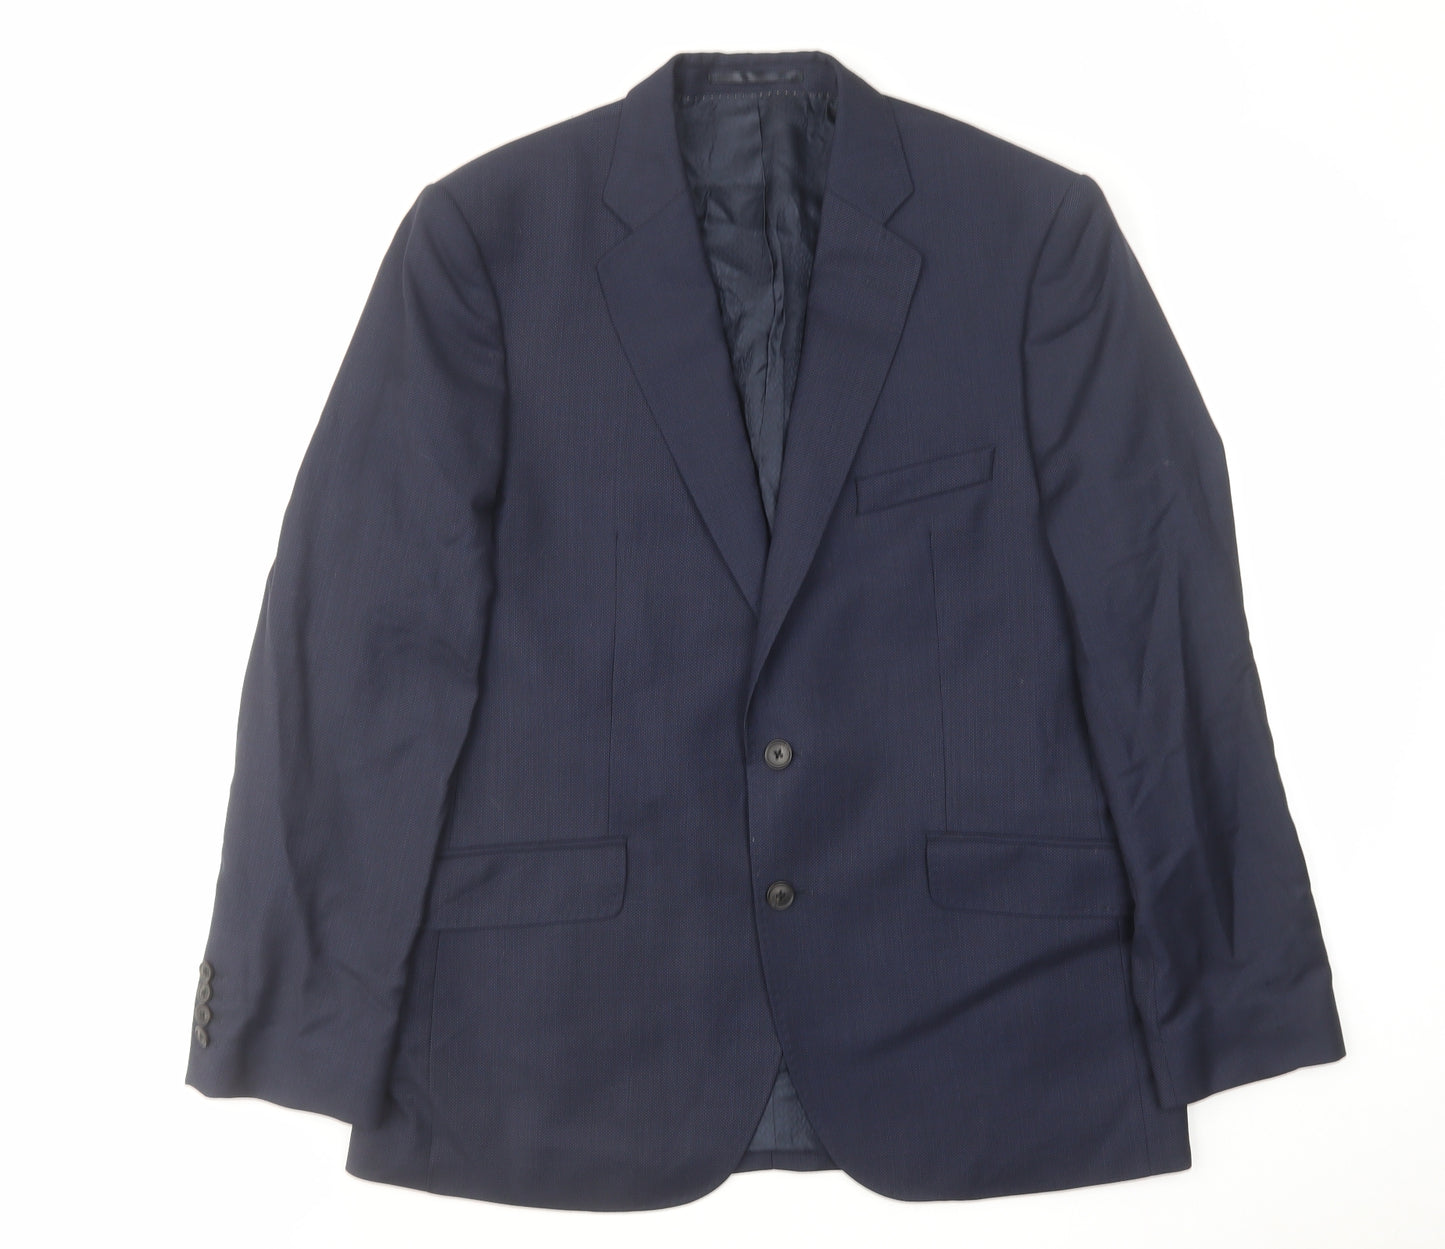 Jaeger Mens Blue Polyester Jacket Suit Jacket Size 42 Regular